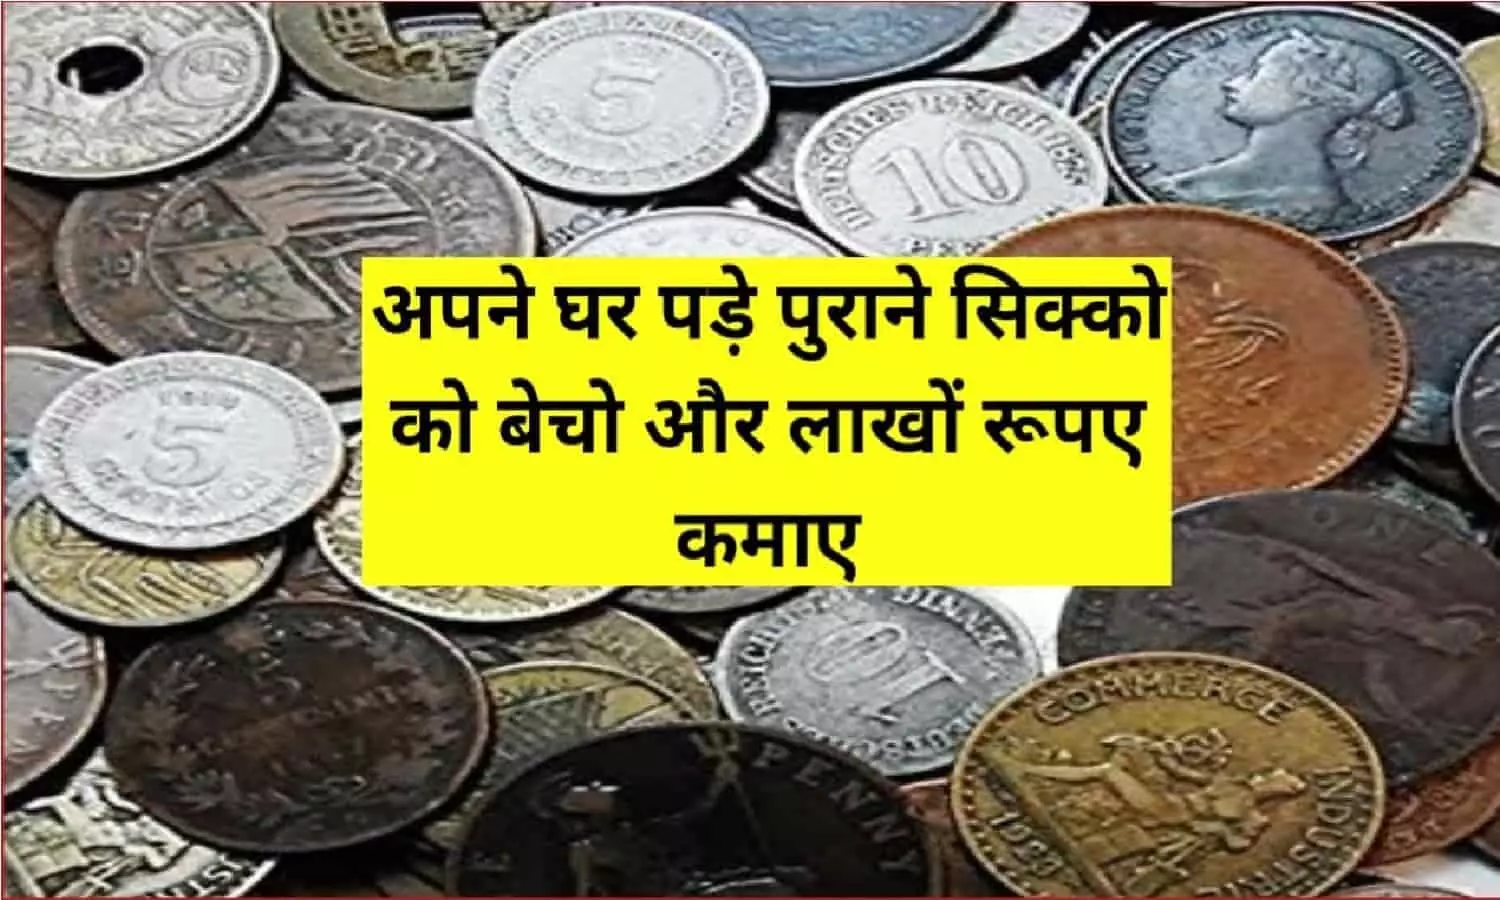 Sell Old Five Rupees 2022: पाँच रुपए के पुराने नोट कीमत लाखों में, हो जाएंगे मालामाल